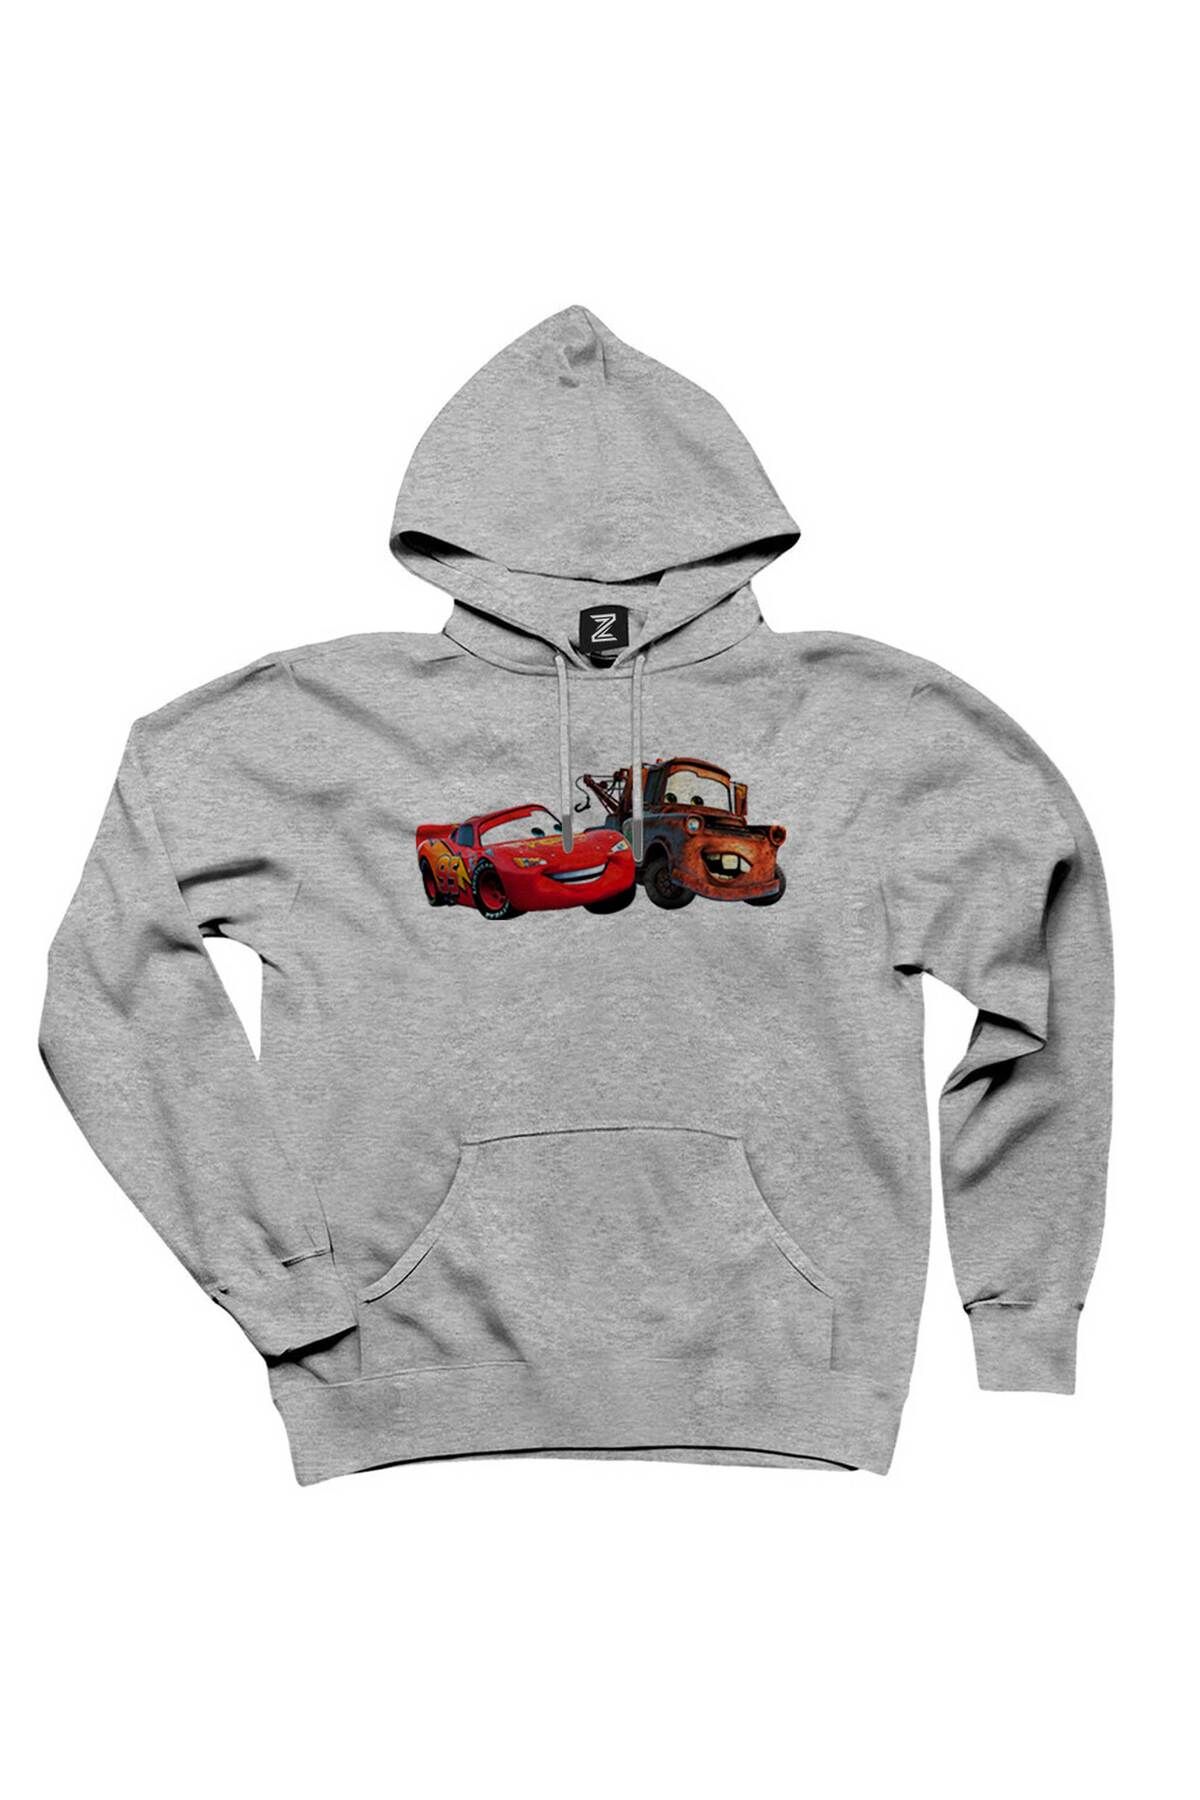 Z zepplin Lightning McQueen and Tow Mater Cars Gray Hooded Sweatshirt  Hoodie - Trendyol